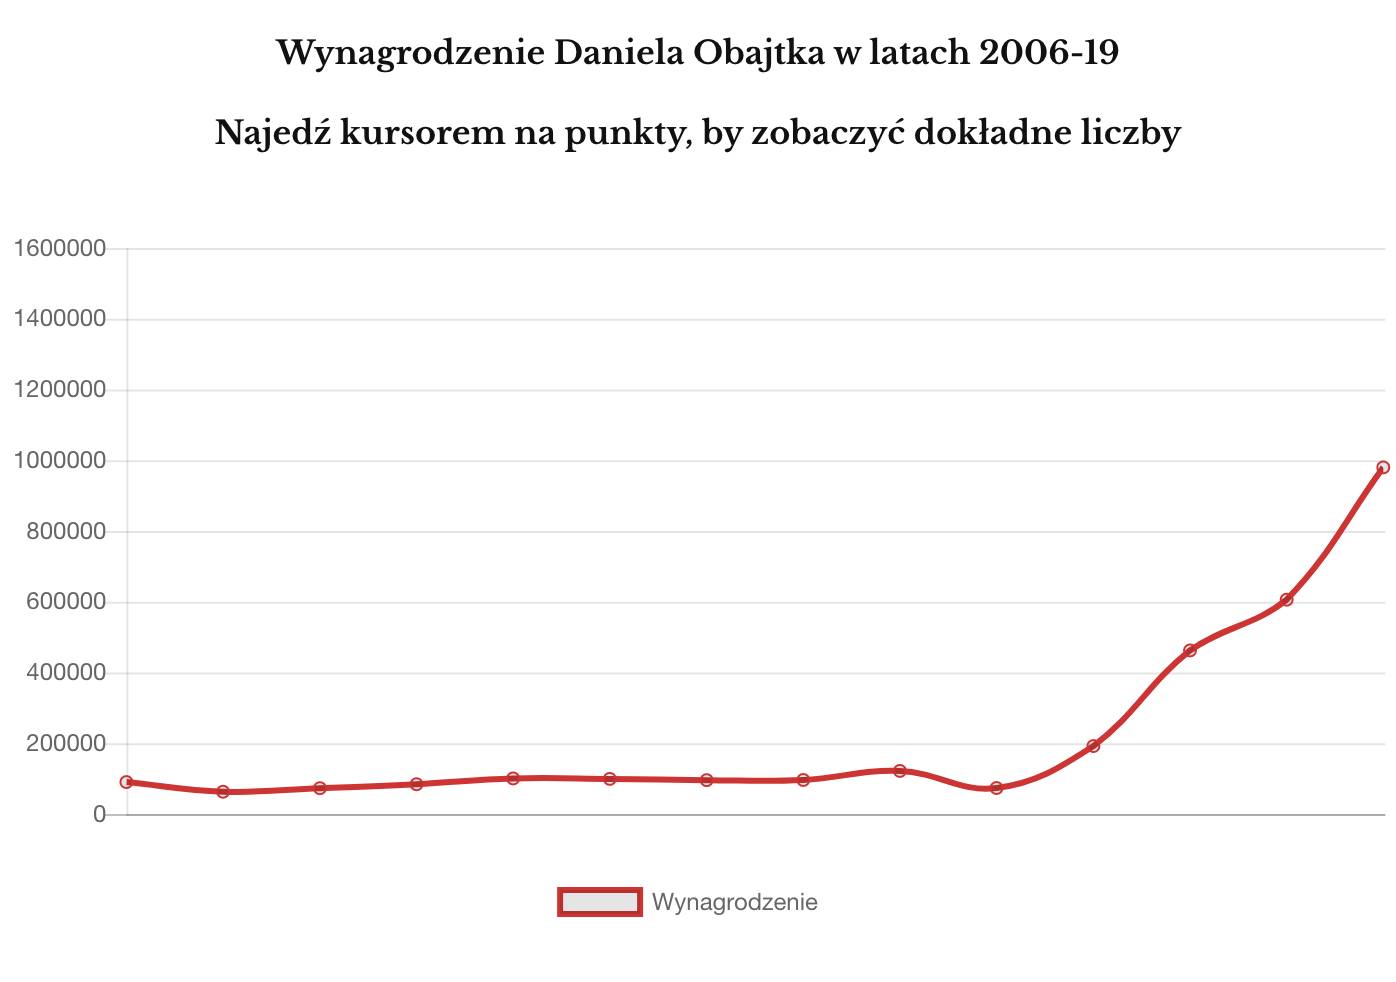 Wynagrodzenie Daniela Obajtka w latach 2006 - 2019